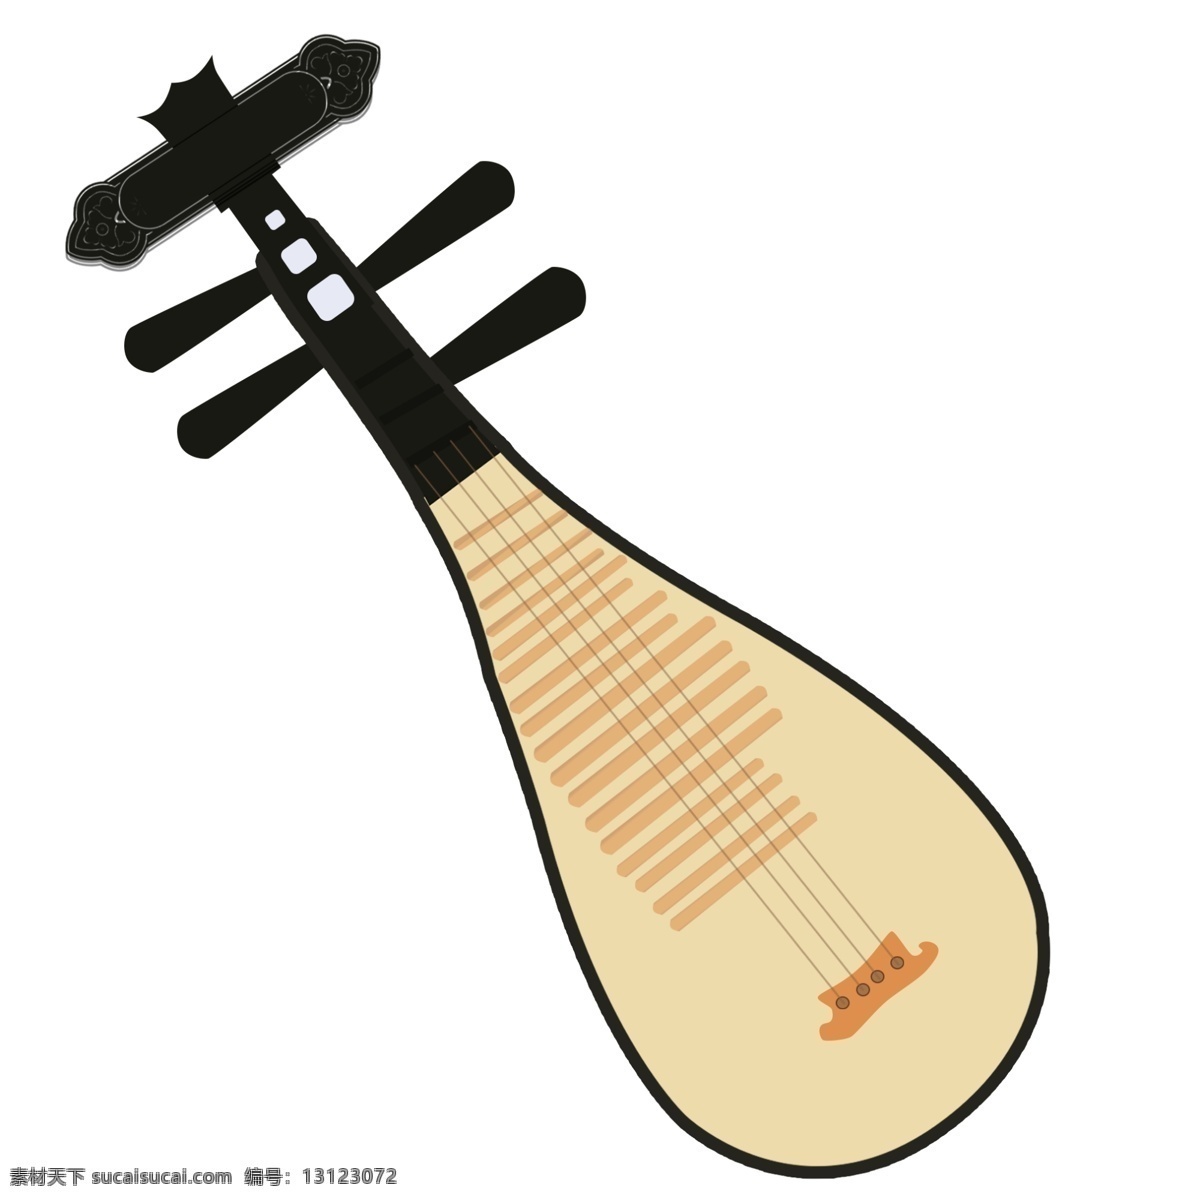 传统 乐器 琵琶 插画 弹奏乐器插画 音乐琵琶插画 传统乐器琵琶 古风乐器 琵琶插画